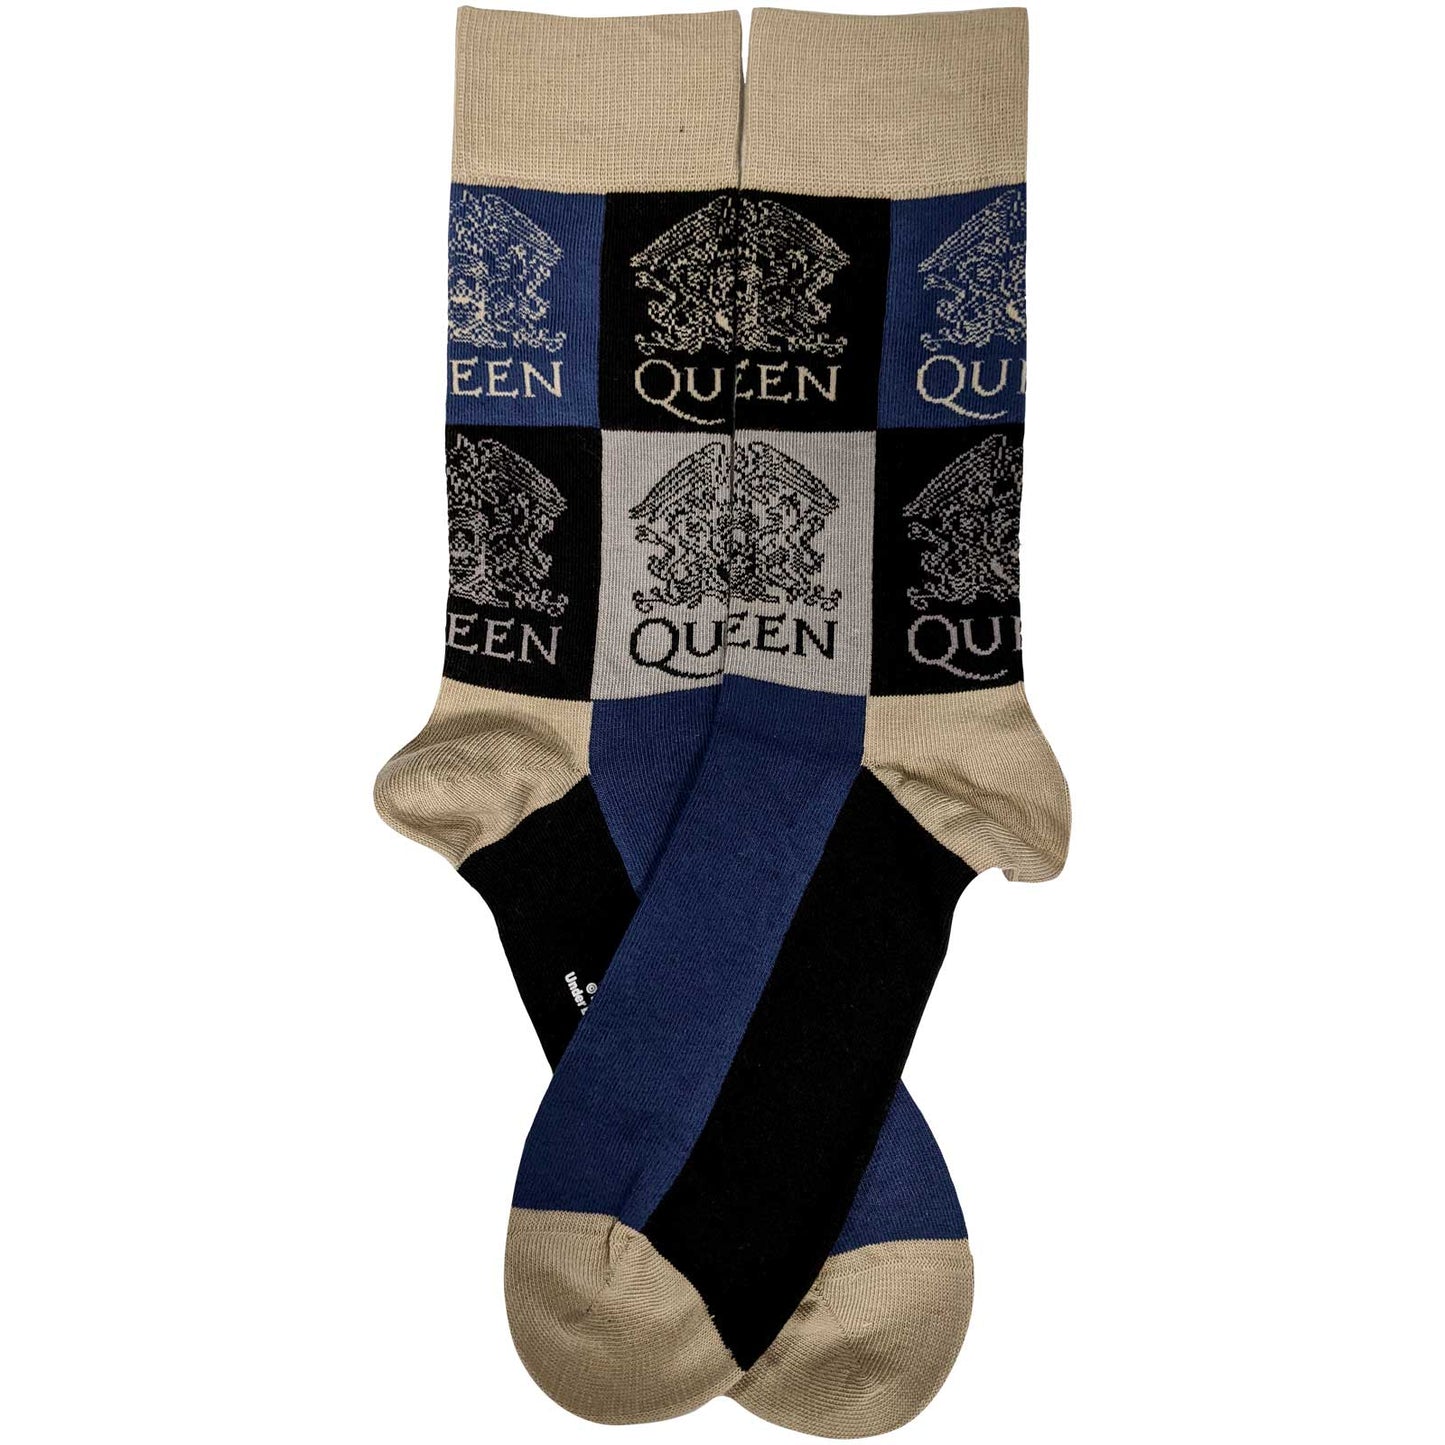 QUEEN - Crest Blocks Socks (7-11)